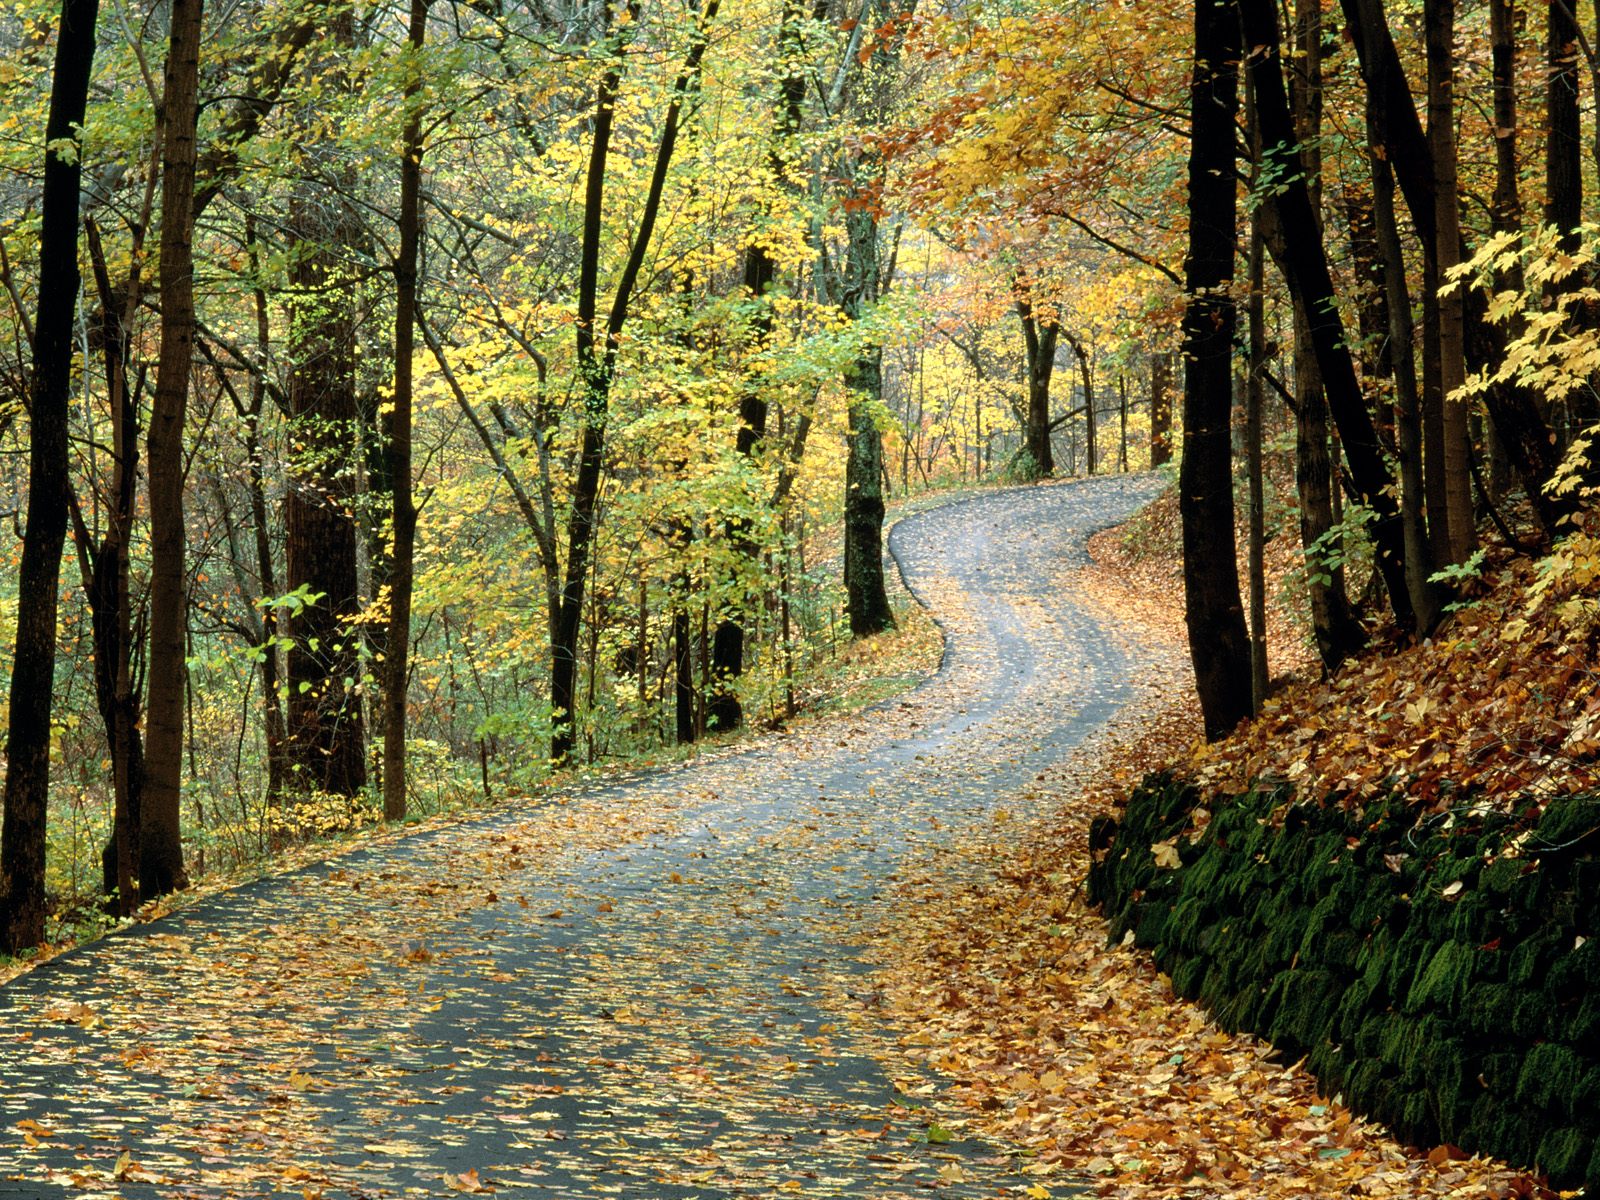 Autumn Road, Percy Warner Park, Nashville, Tenne